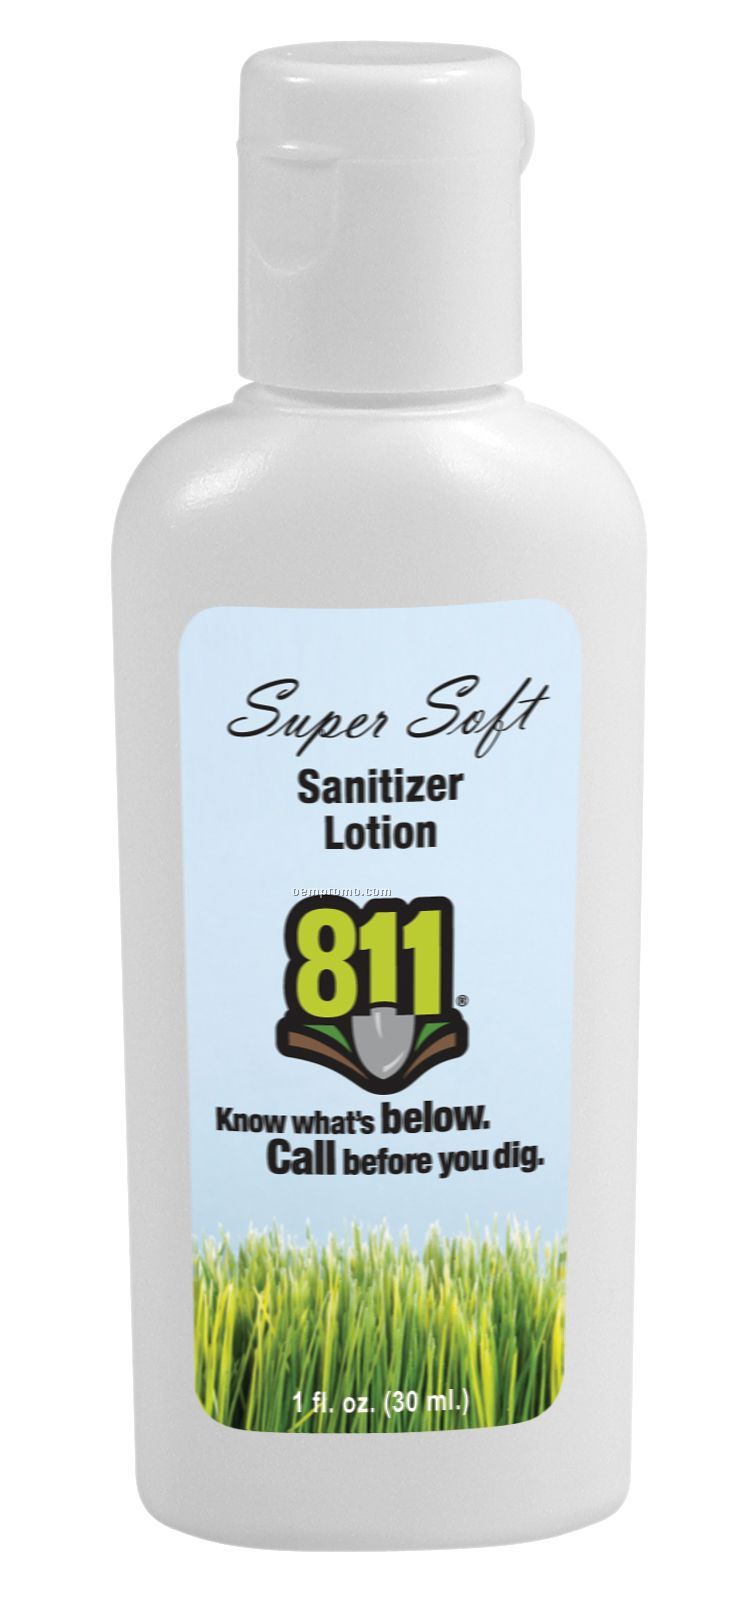 Super Soft Sanitizer (1 Oz)